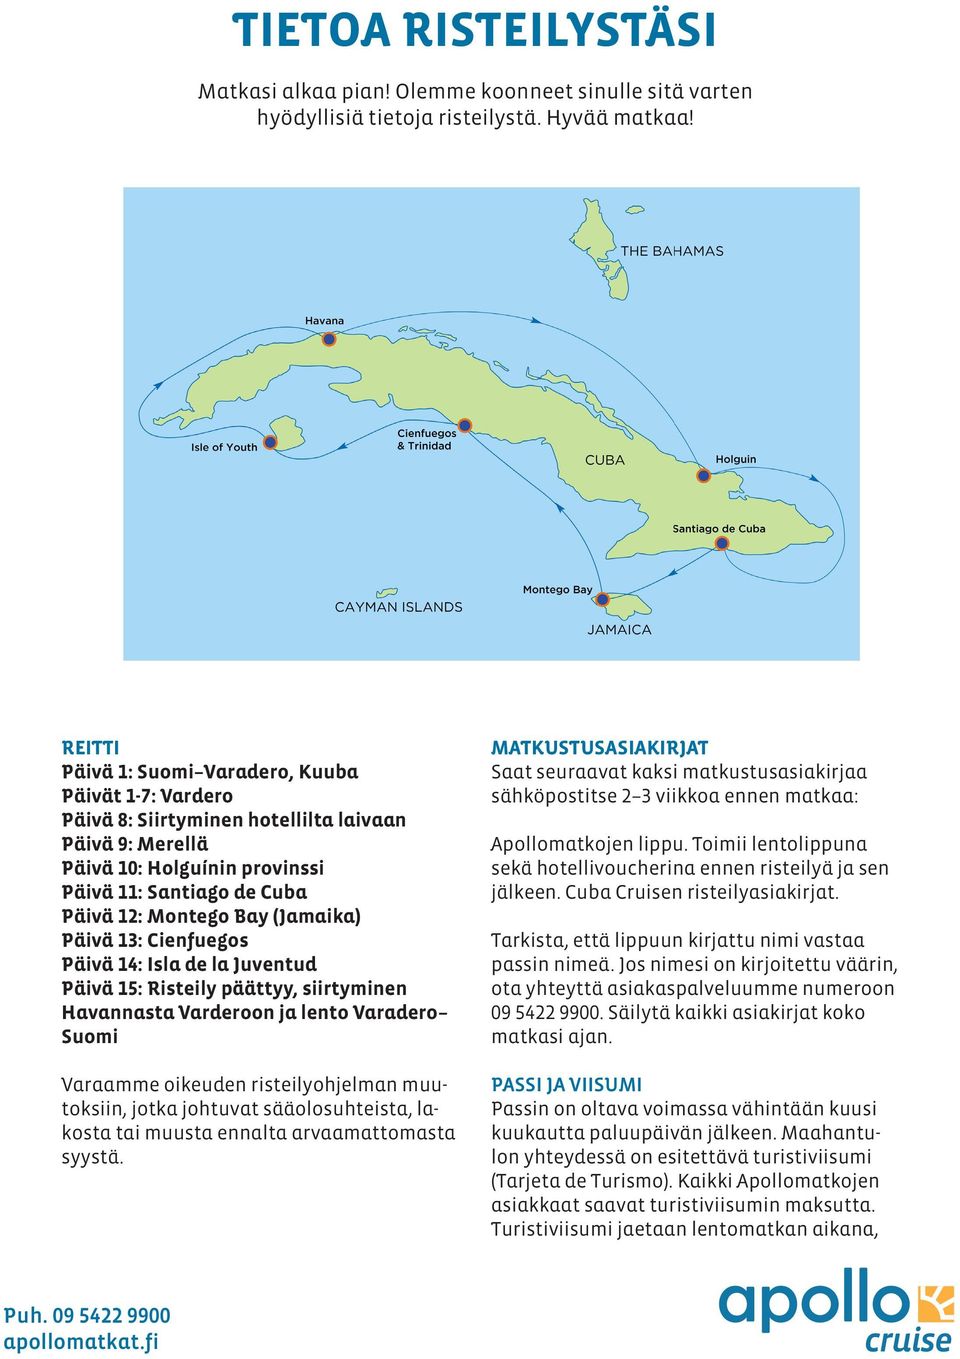 (Jamaika) Päivä 13: Cienfuegos Päivä 14: Isla de la Juventud Päivä 15: Risteily päättyy, siirtyminen Havannasta Varderoon ja lento Varadero Suomi Varaamme oikeuden risteilyohjelman muutoksiin, jotka